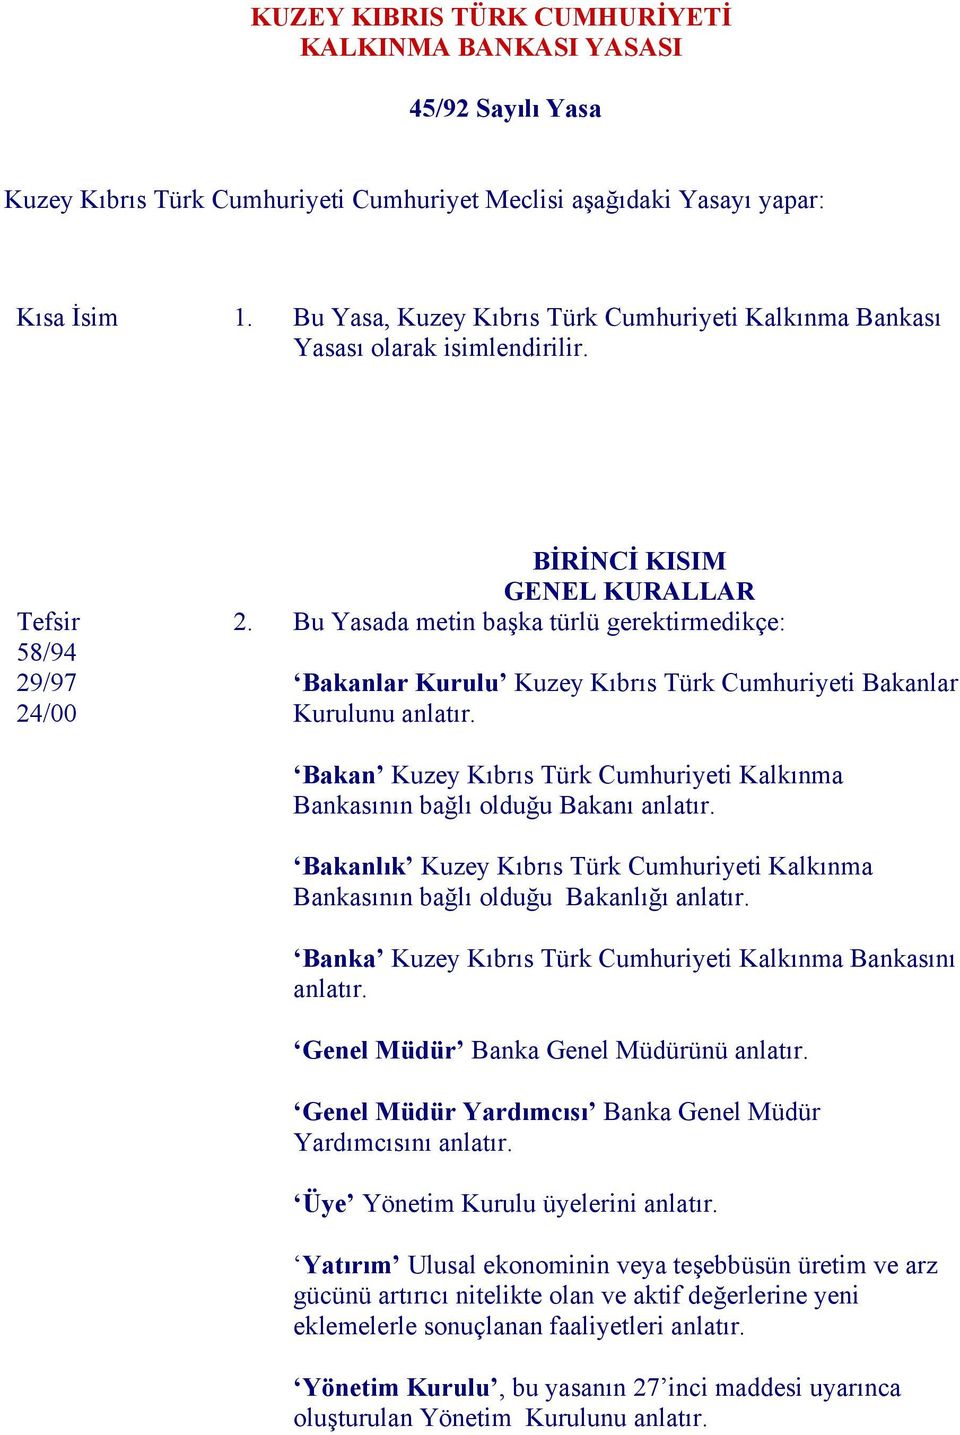 Bu Yasada metin başka türlü gerektirmedikçe: Bakanlar Kurulu Kuzey Kıbrıs Türk Cumhuriyeti Bakanlar Kurulunu anlatır.